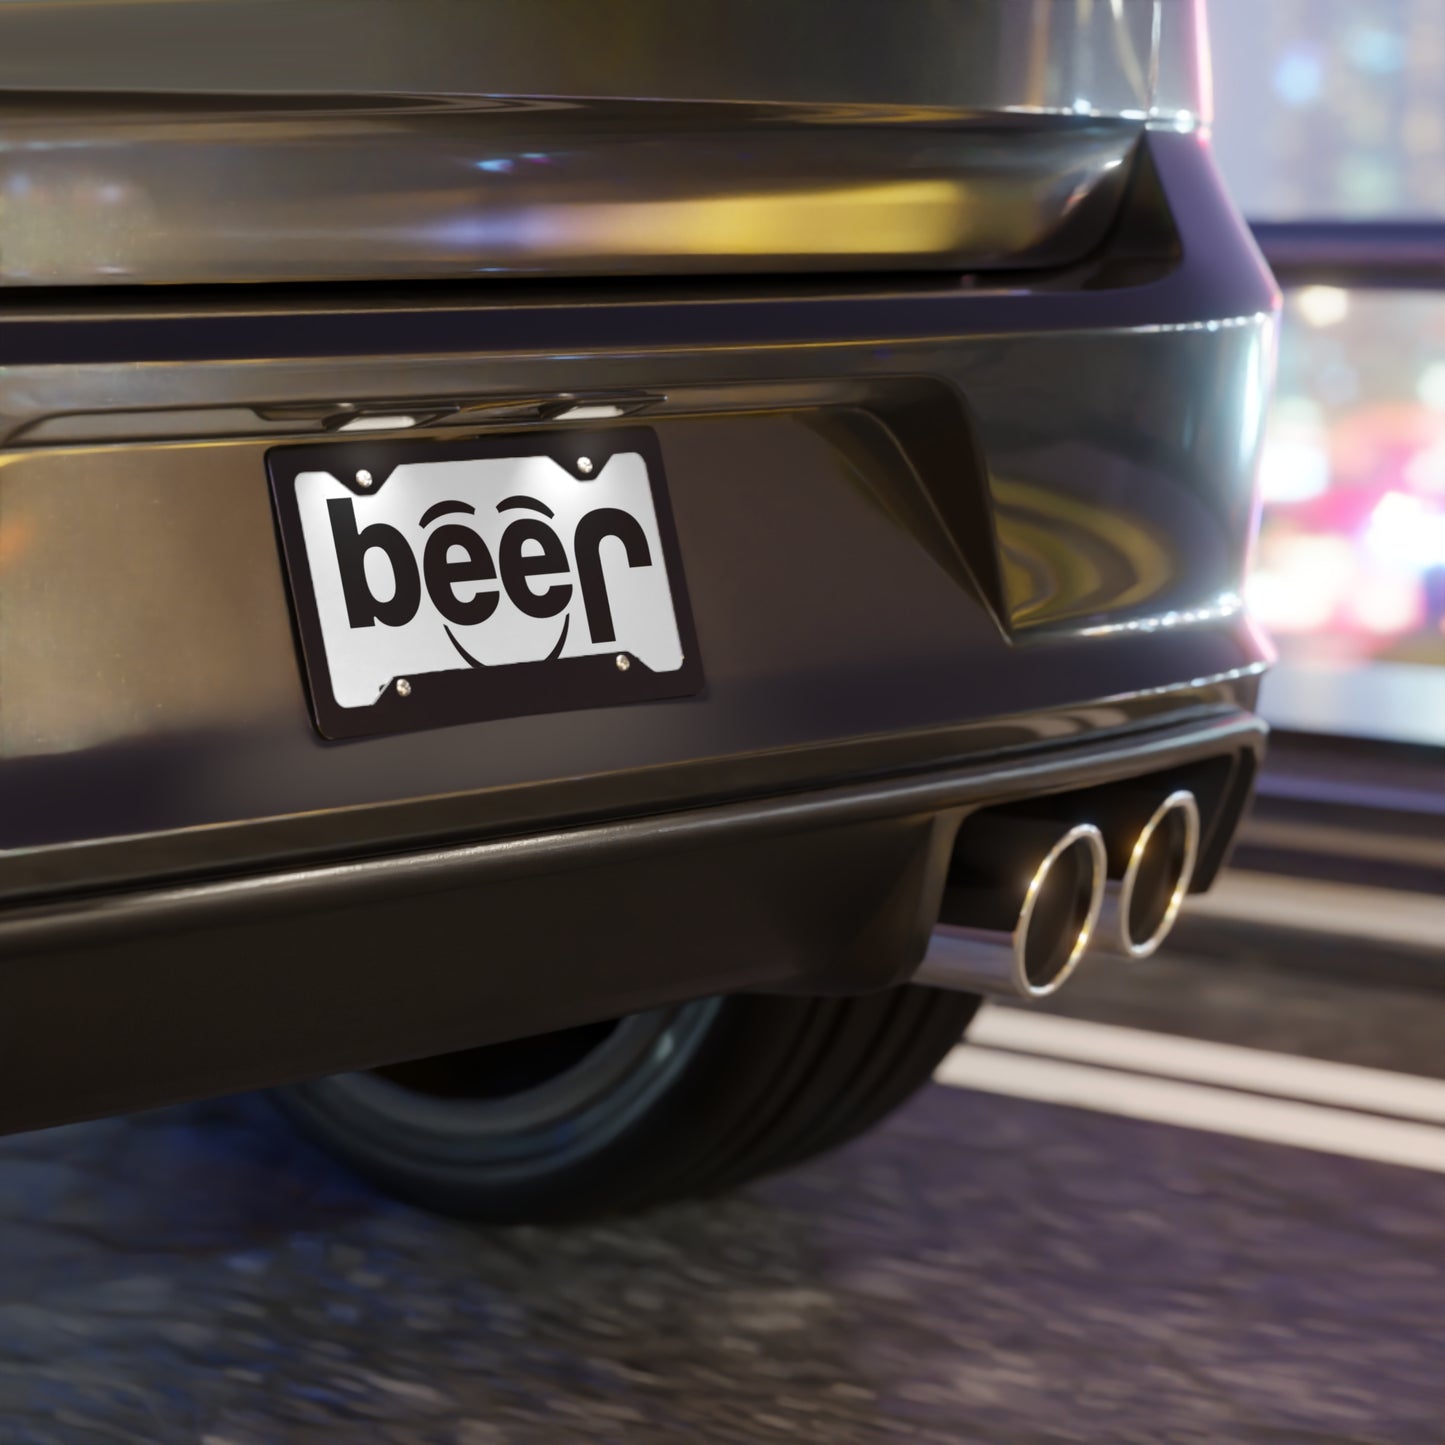 Jeep Beer Spoof Vanity License Plates